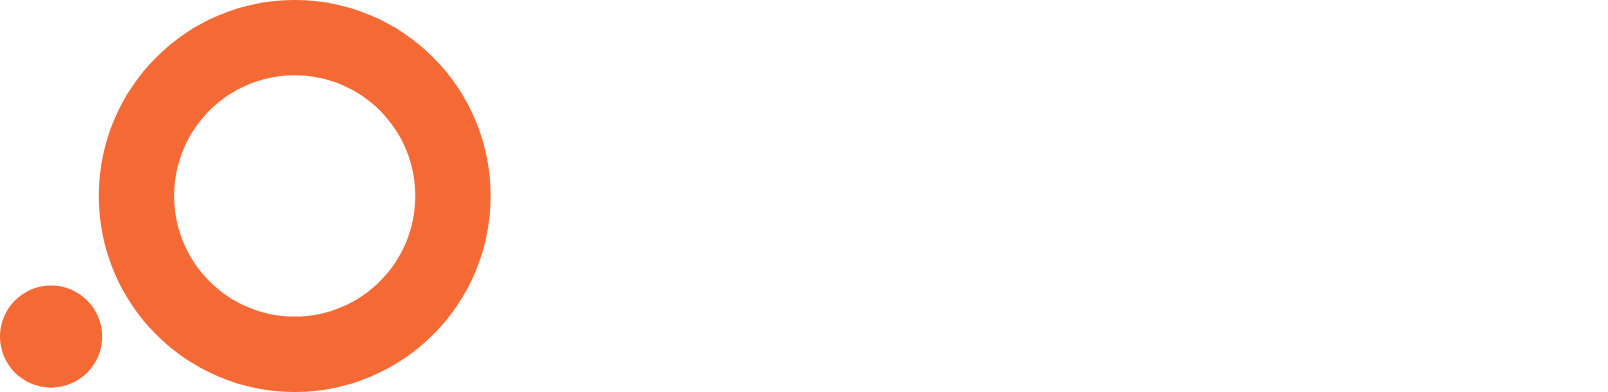 Outset Medical Logo groß für dunkle Hintergründe (transparentes PNG)